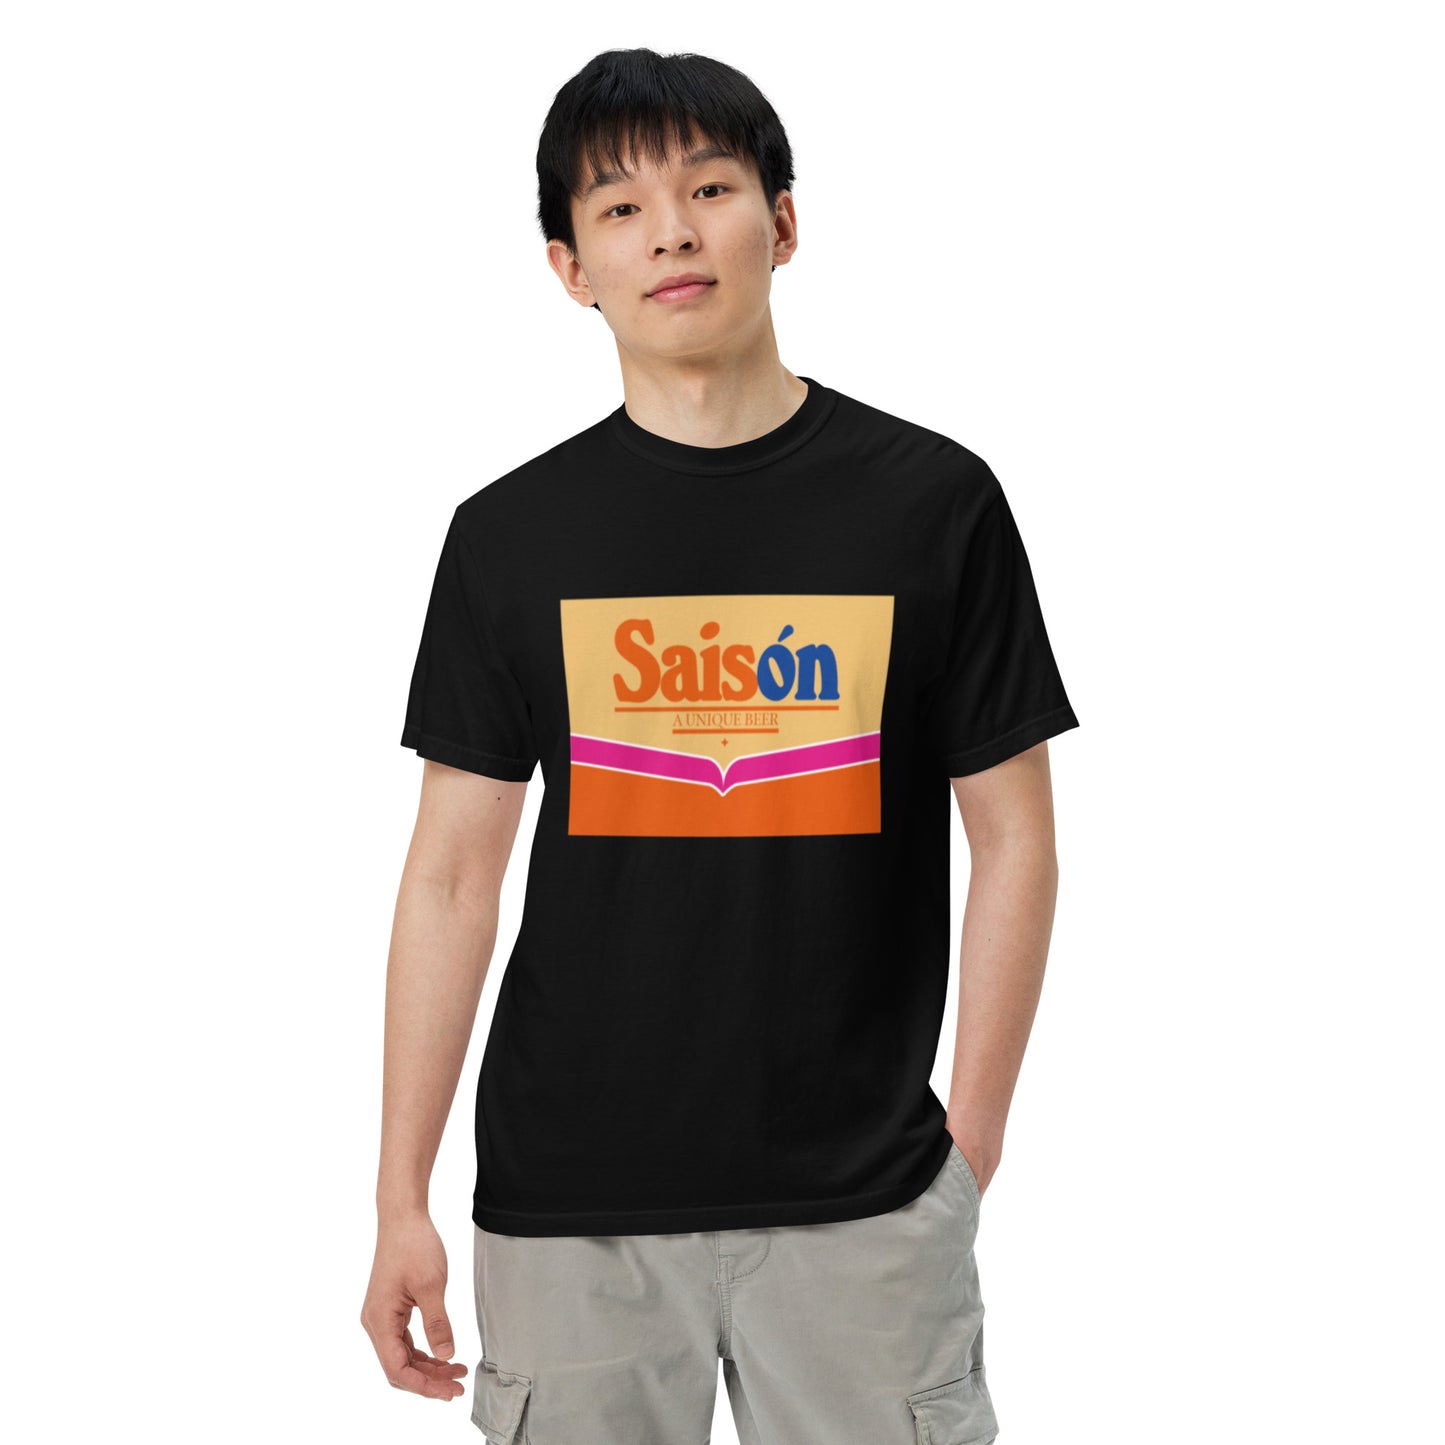 Saison comfort colors heavyweight t-shirt